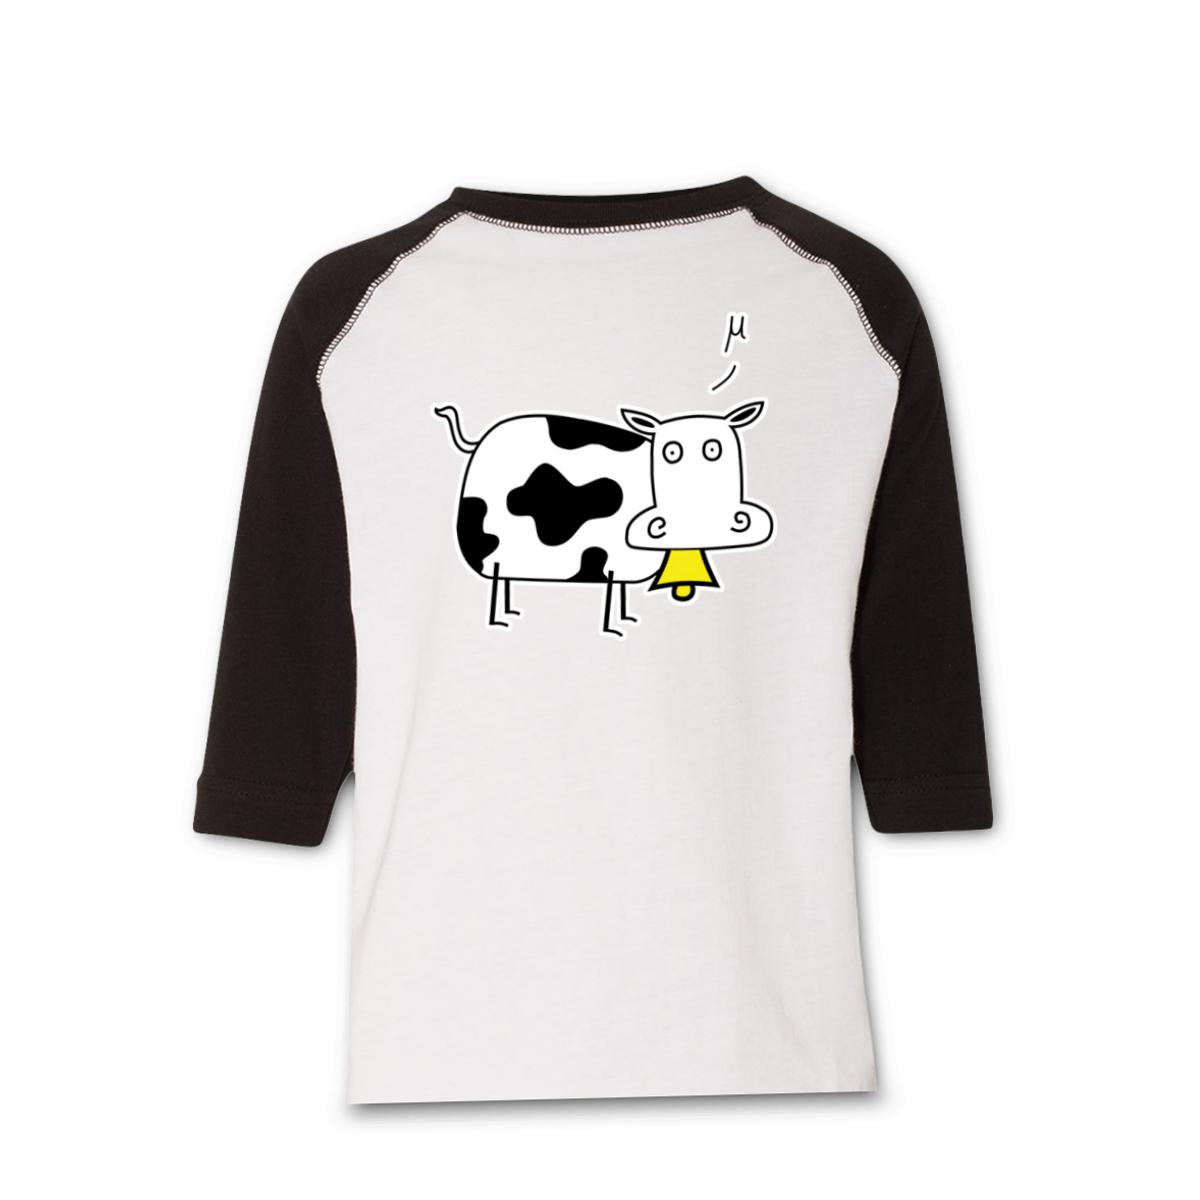 Mu Cow Toddler Raglan Tee 2T white-black